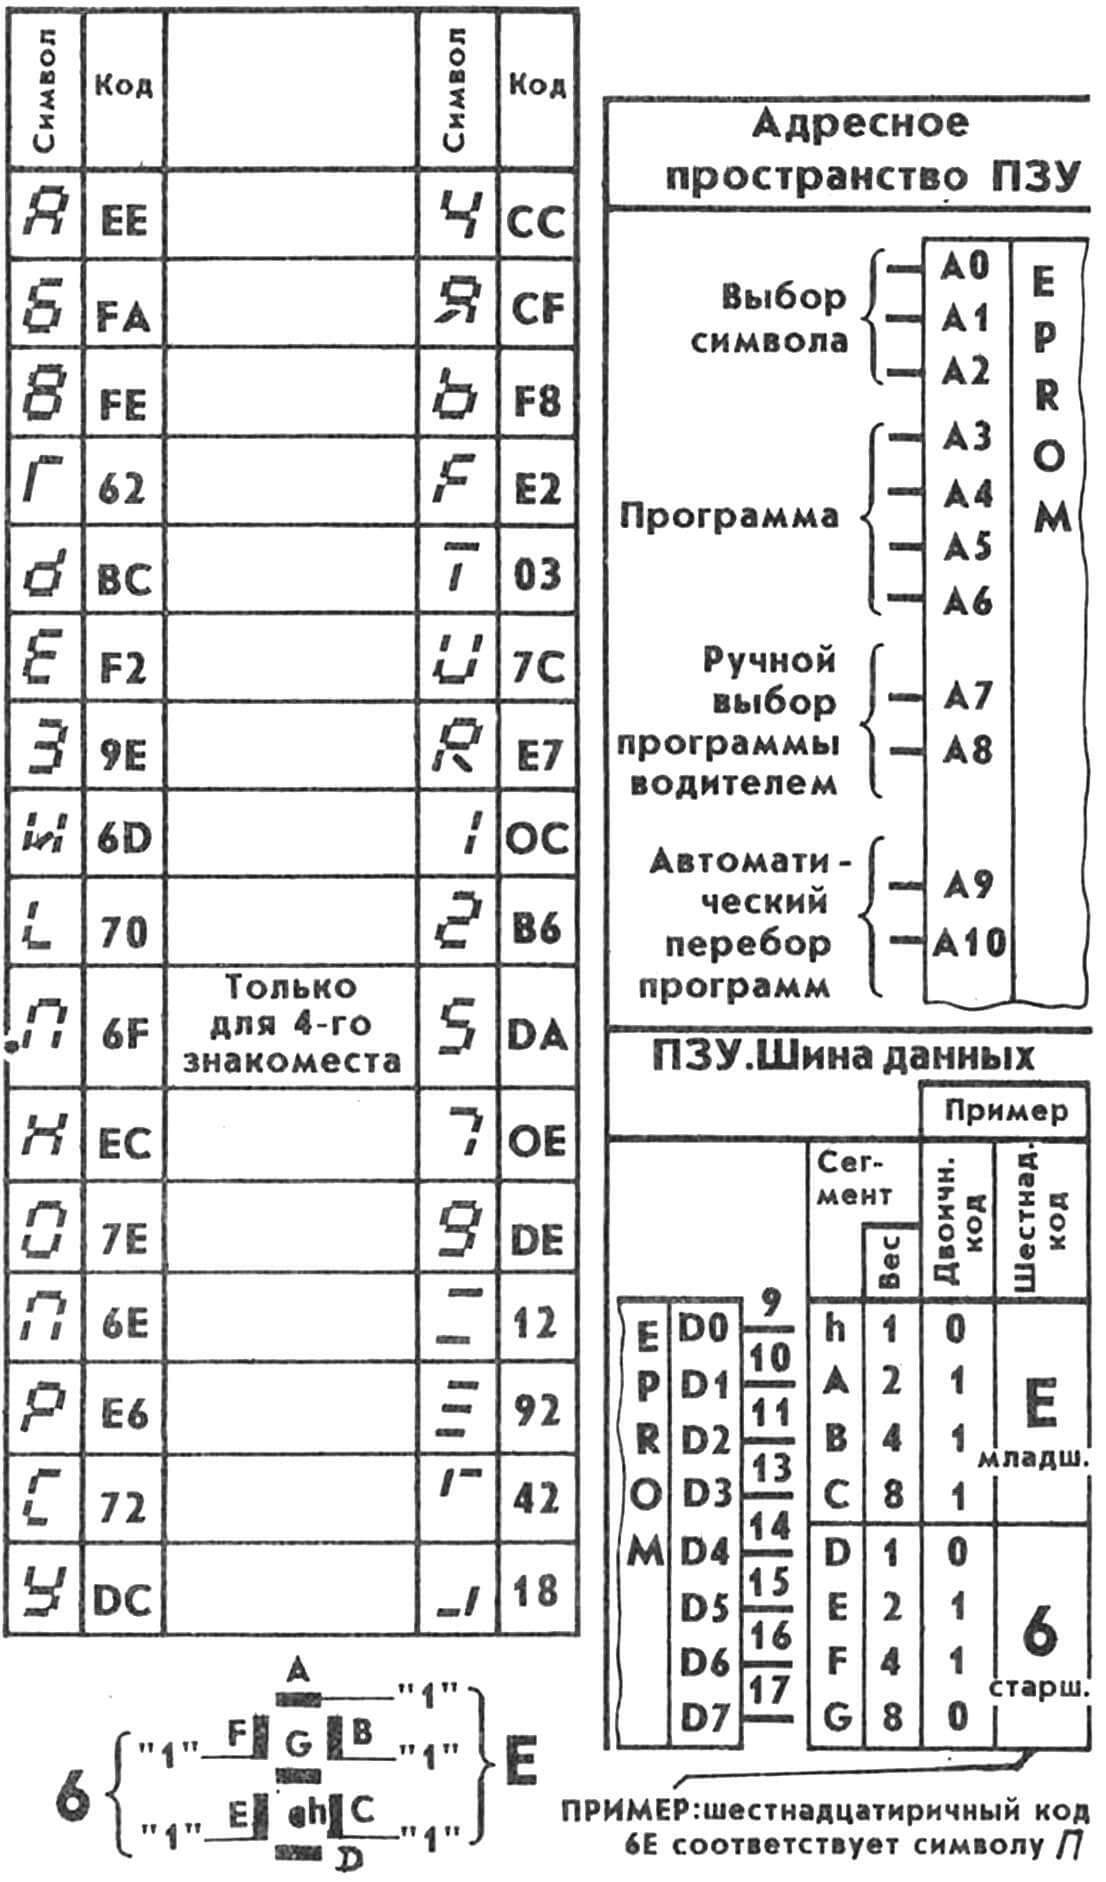 Таблица соответствия символов и кодов табло «Бегущая строка»